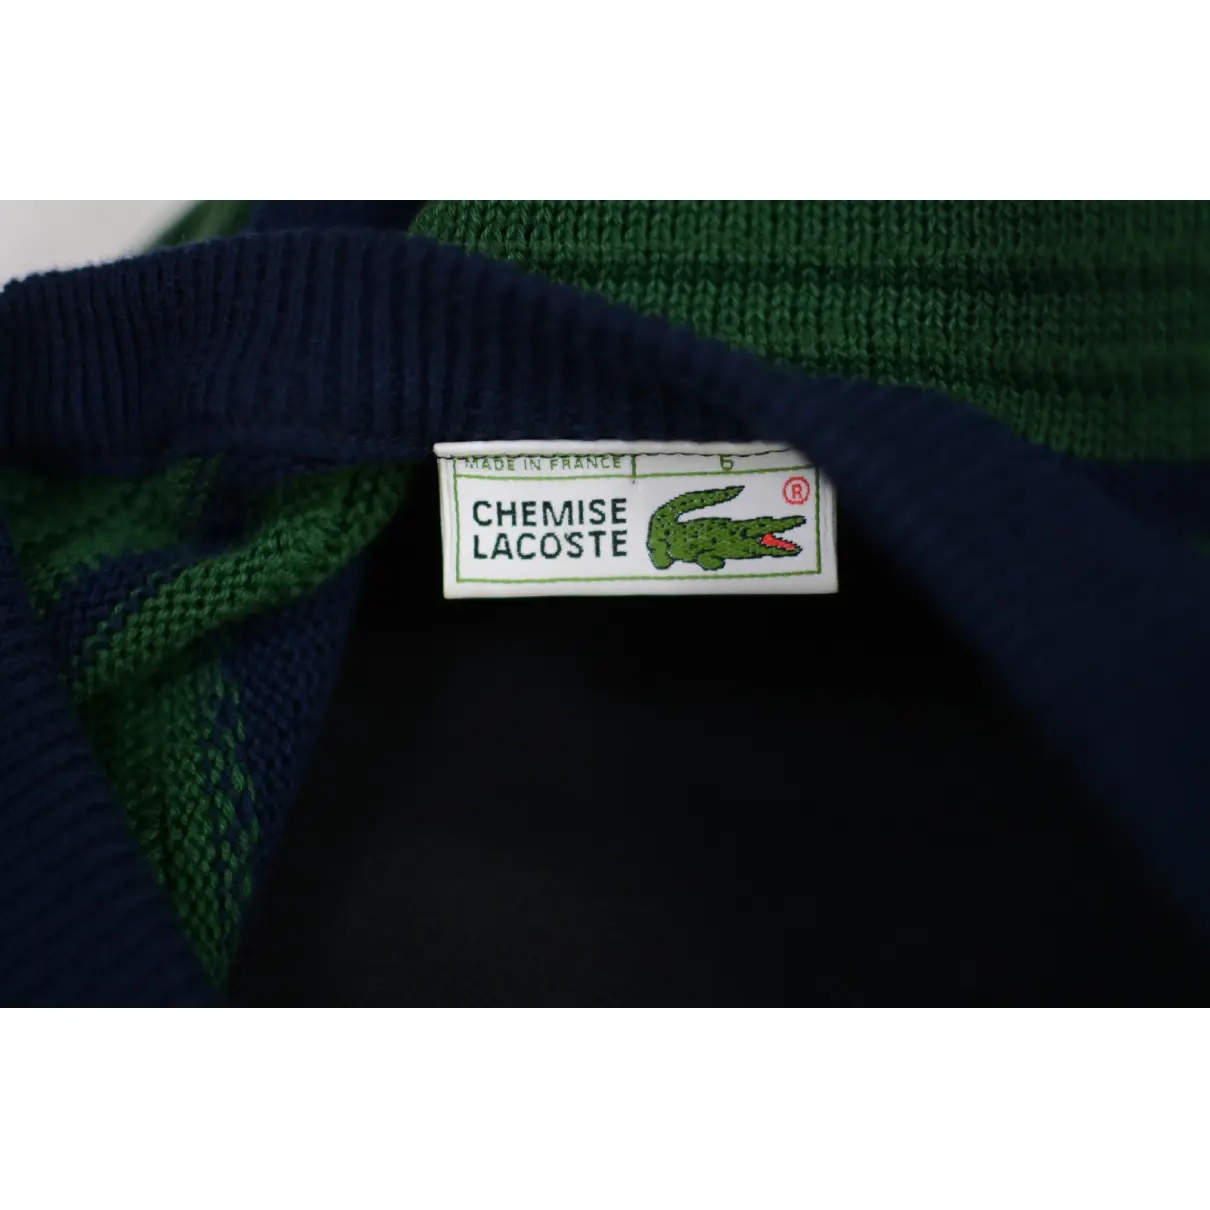 Luxury Lacoste Knitwear & Sweatshirts Men